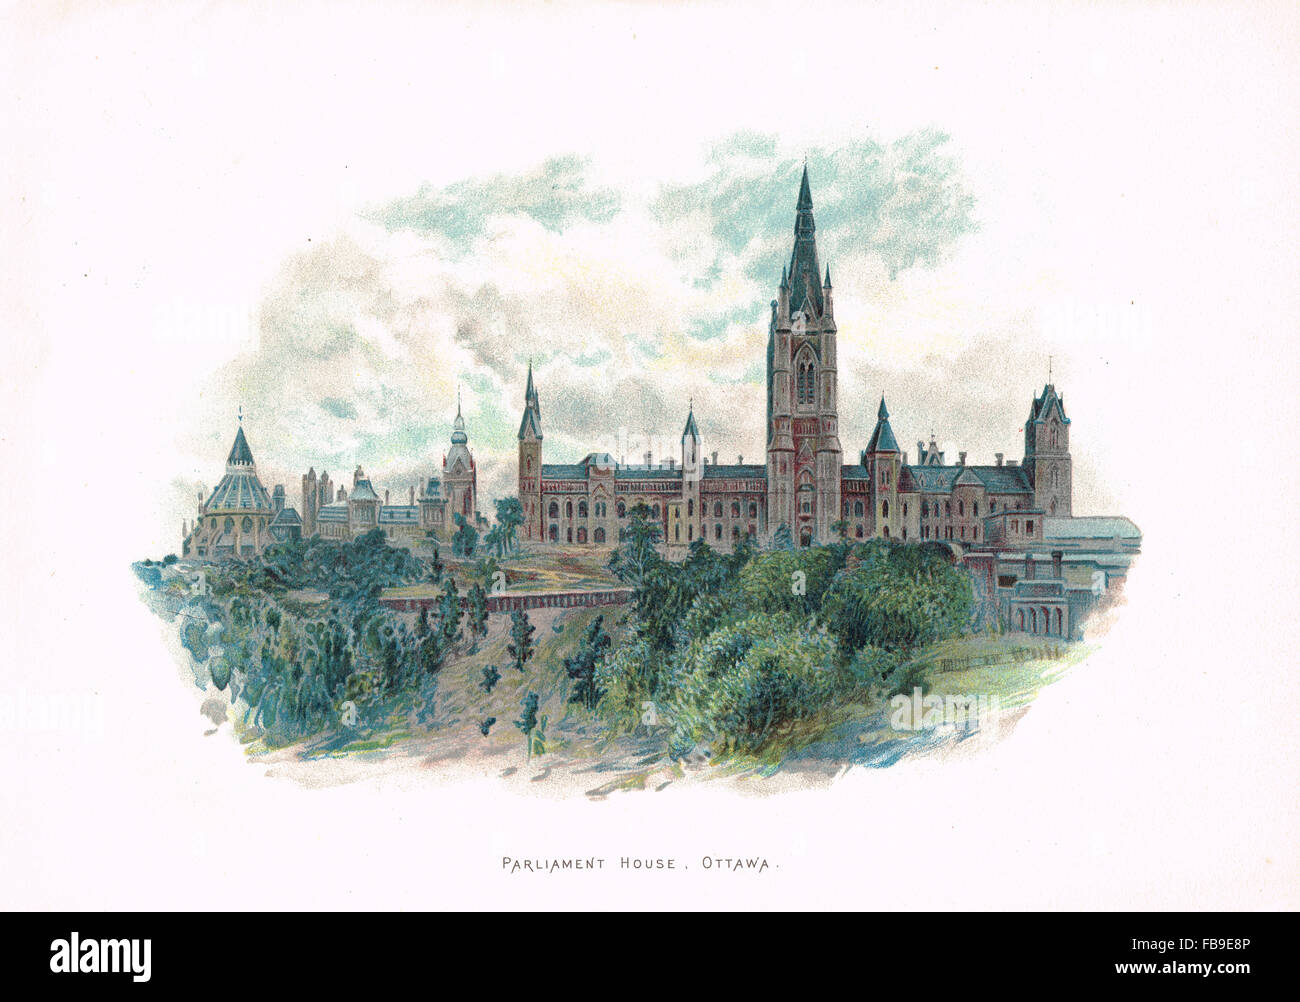 Illustration ancienne maison du parlement d'Ottawa Banque D'Images